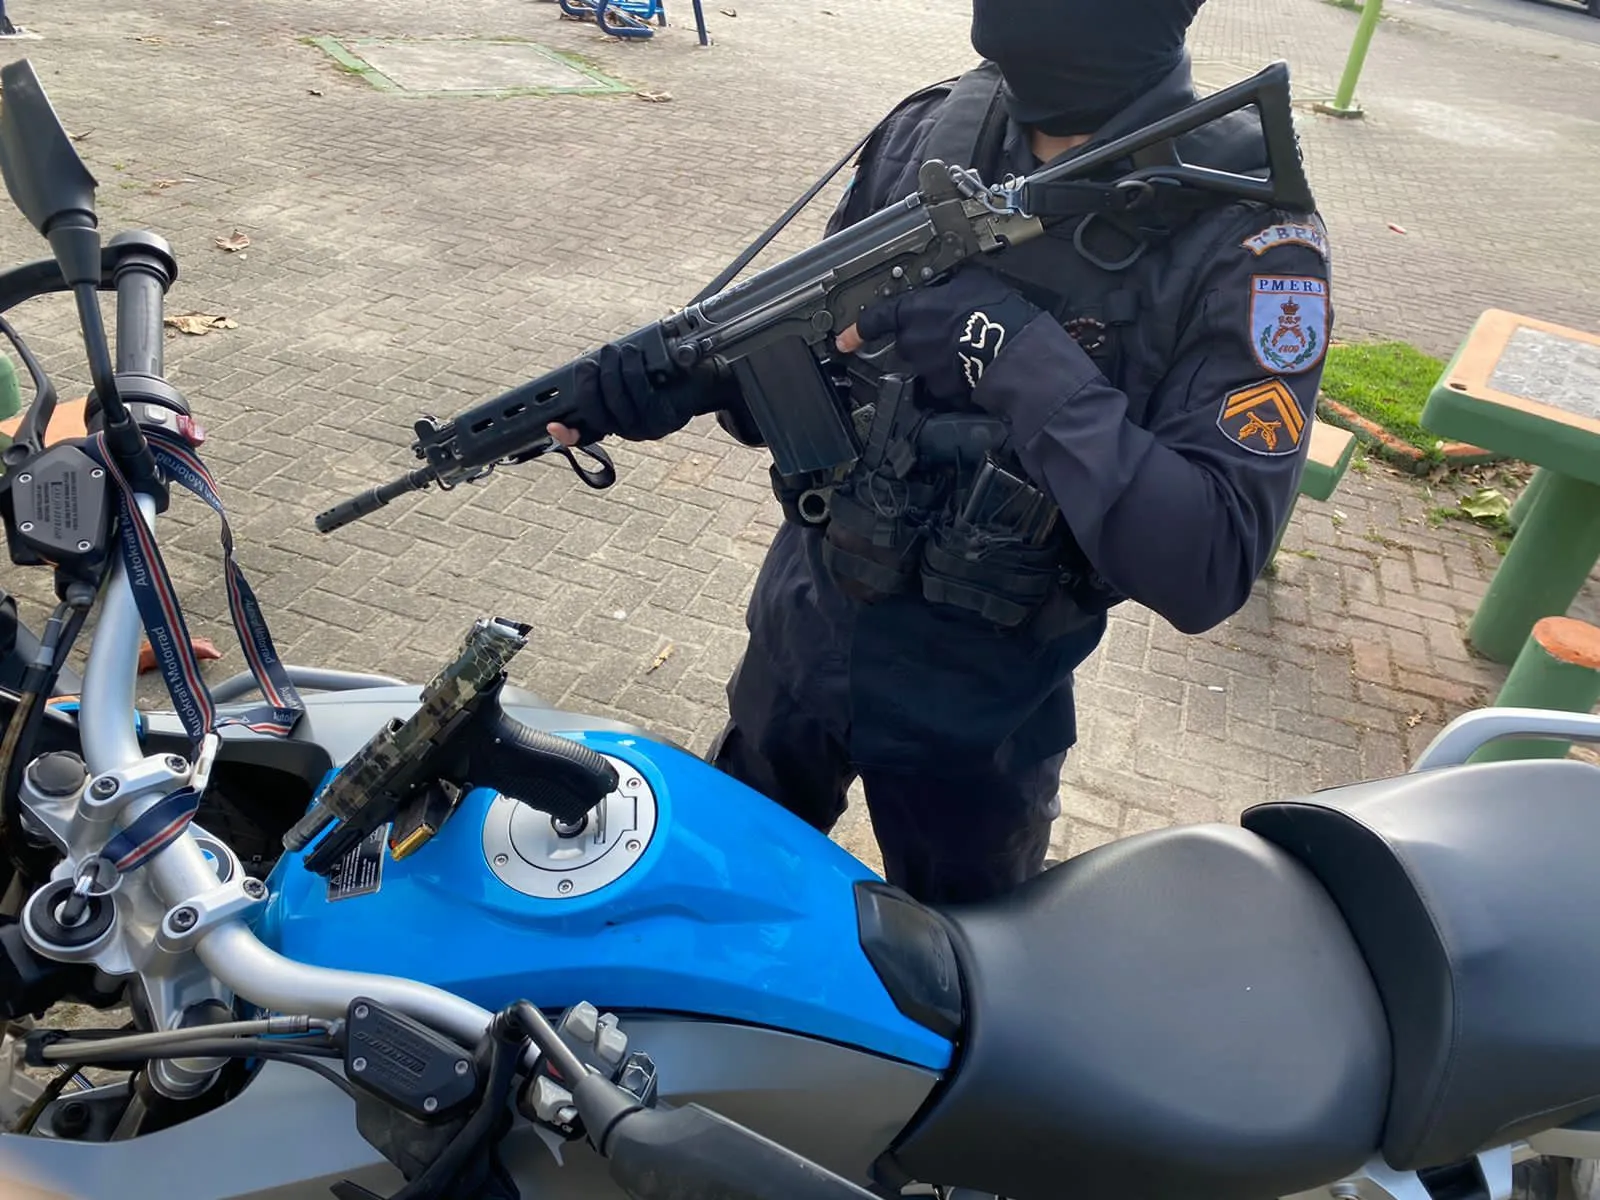 Uma pistola e a motocicleta foram apreendidas pela polícia